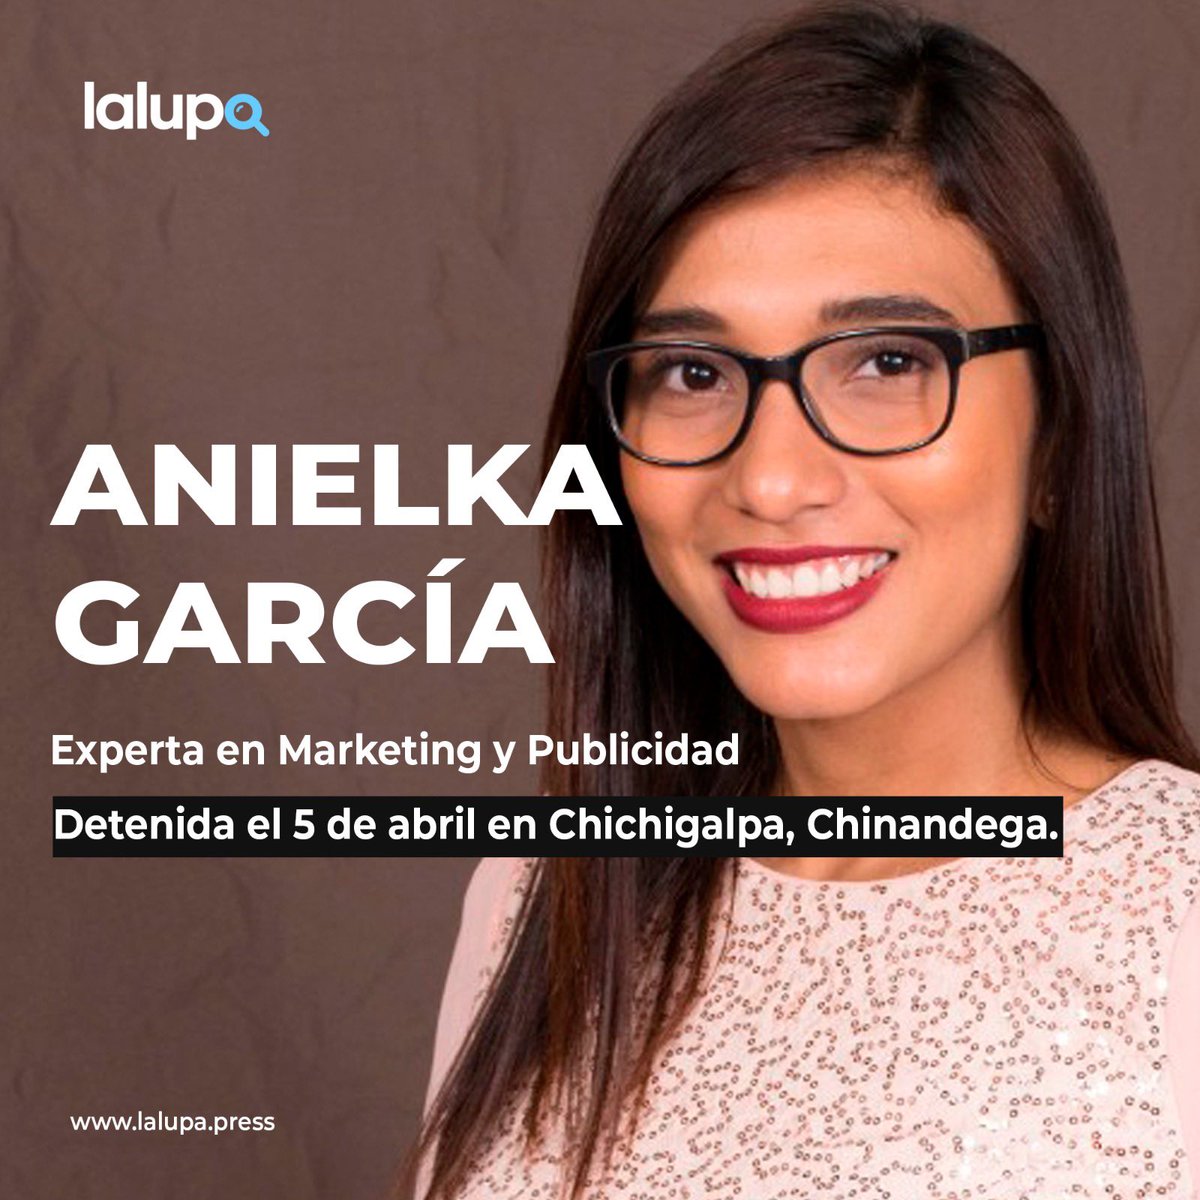 #PresaPolítica | Anielka García, experta en Marketing y Publicidad, fue detenida el 5 de abril en #Chichigalpa, #Chinandega, luego que publicó en su redes sociales imágenes de una camiseta alusiva a la Rebelión de Abril.

lalupa.press/olesia-munoz-y…